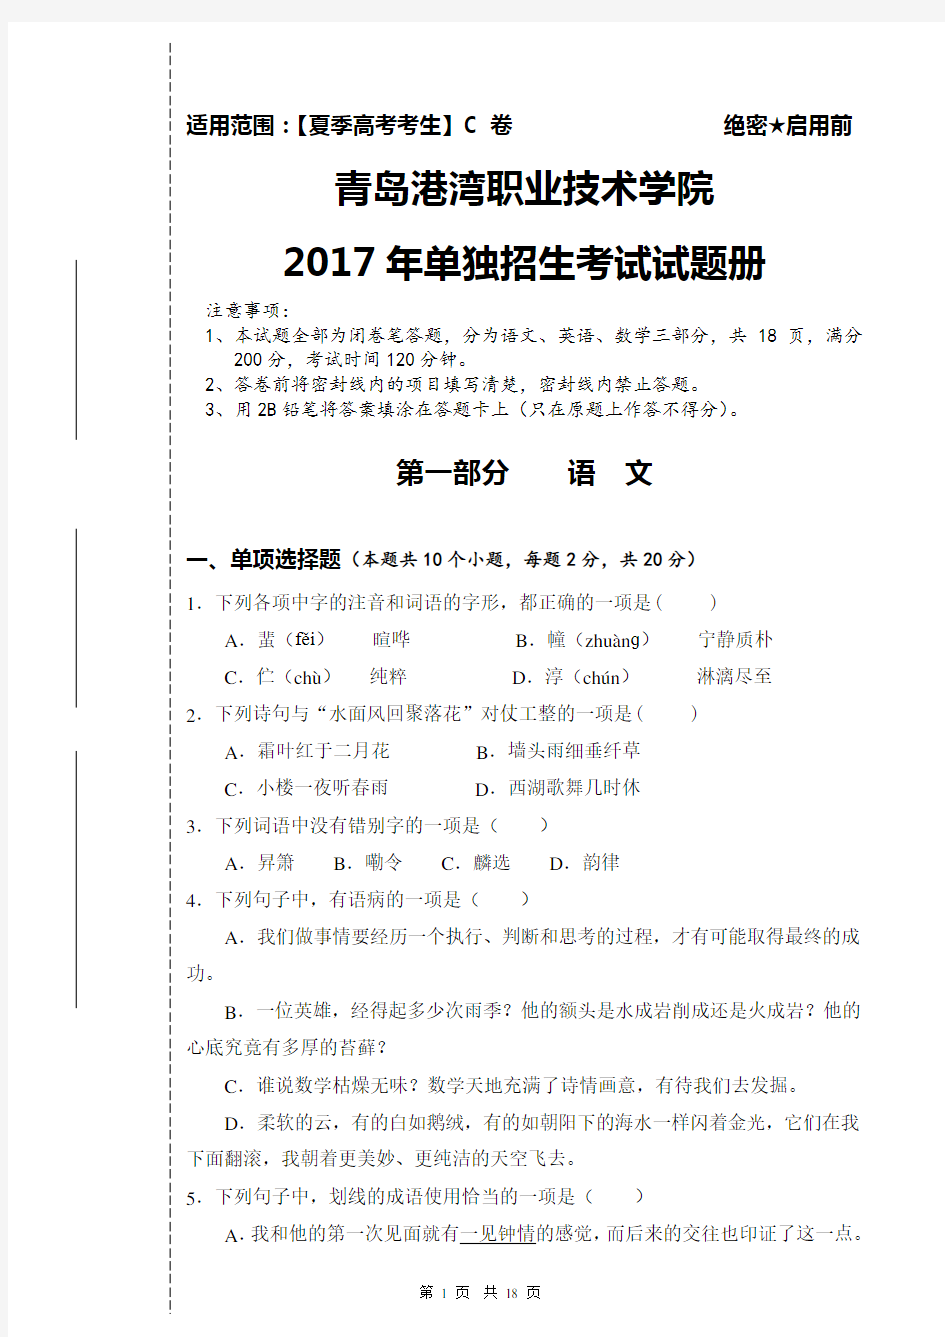 青岛港湾职业技术学院2017年单独招生试题(夏季高考)